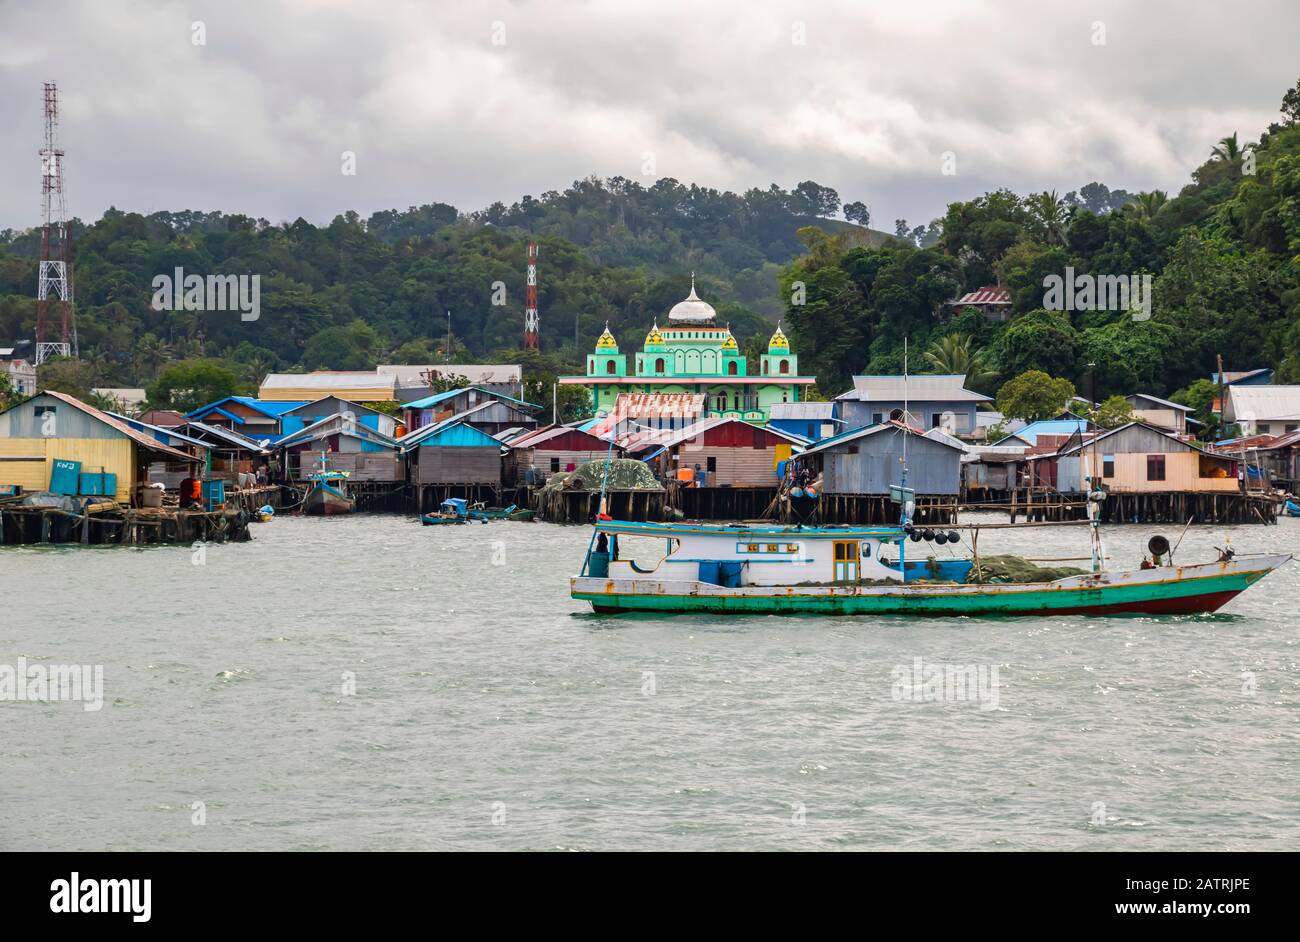 Port de Sorong avec des bâtiments colorés et un bateau ; Sorong, Papouasie occidentale, Indonésie Banque D'Images